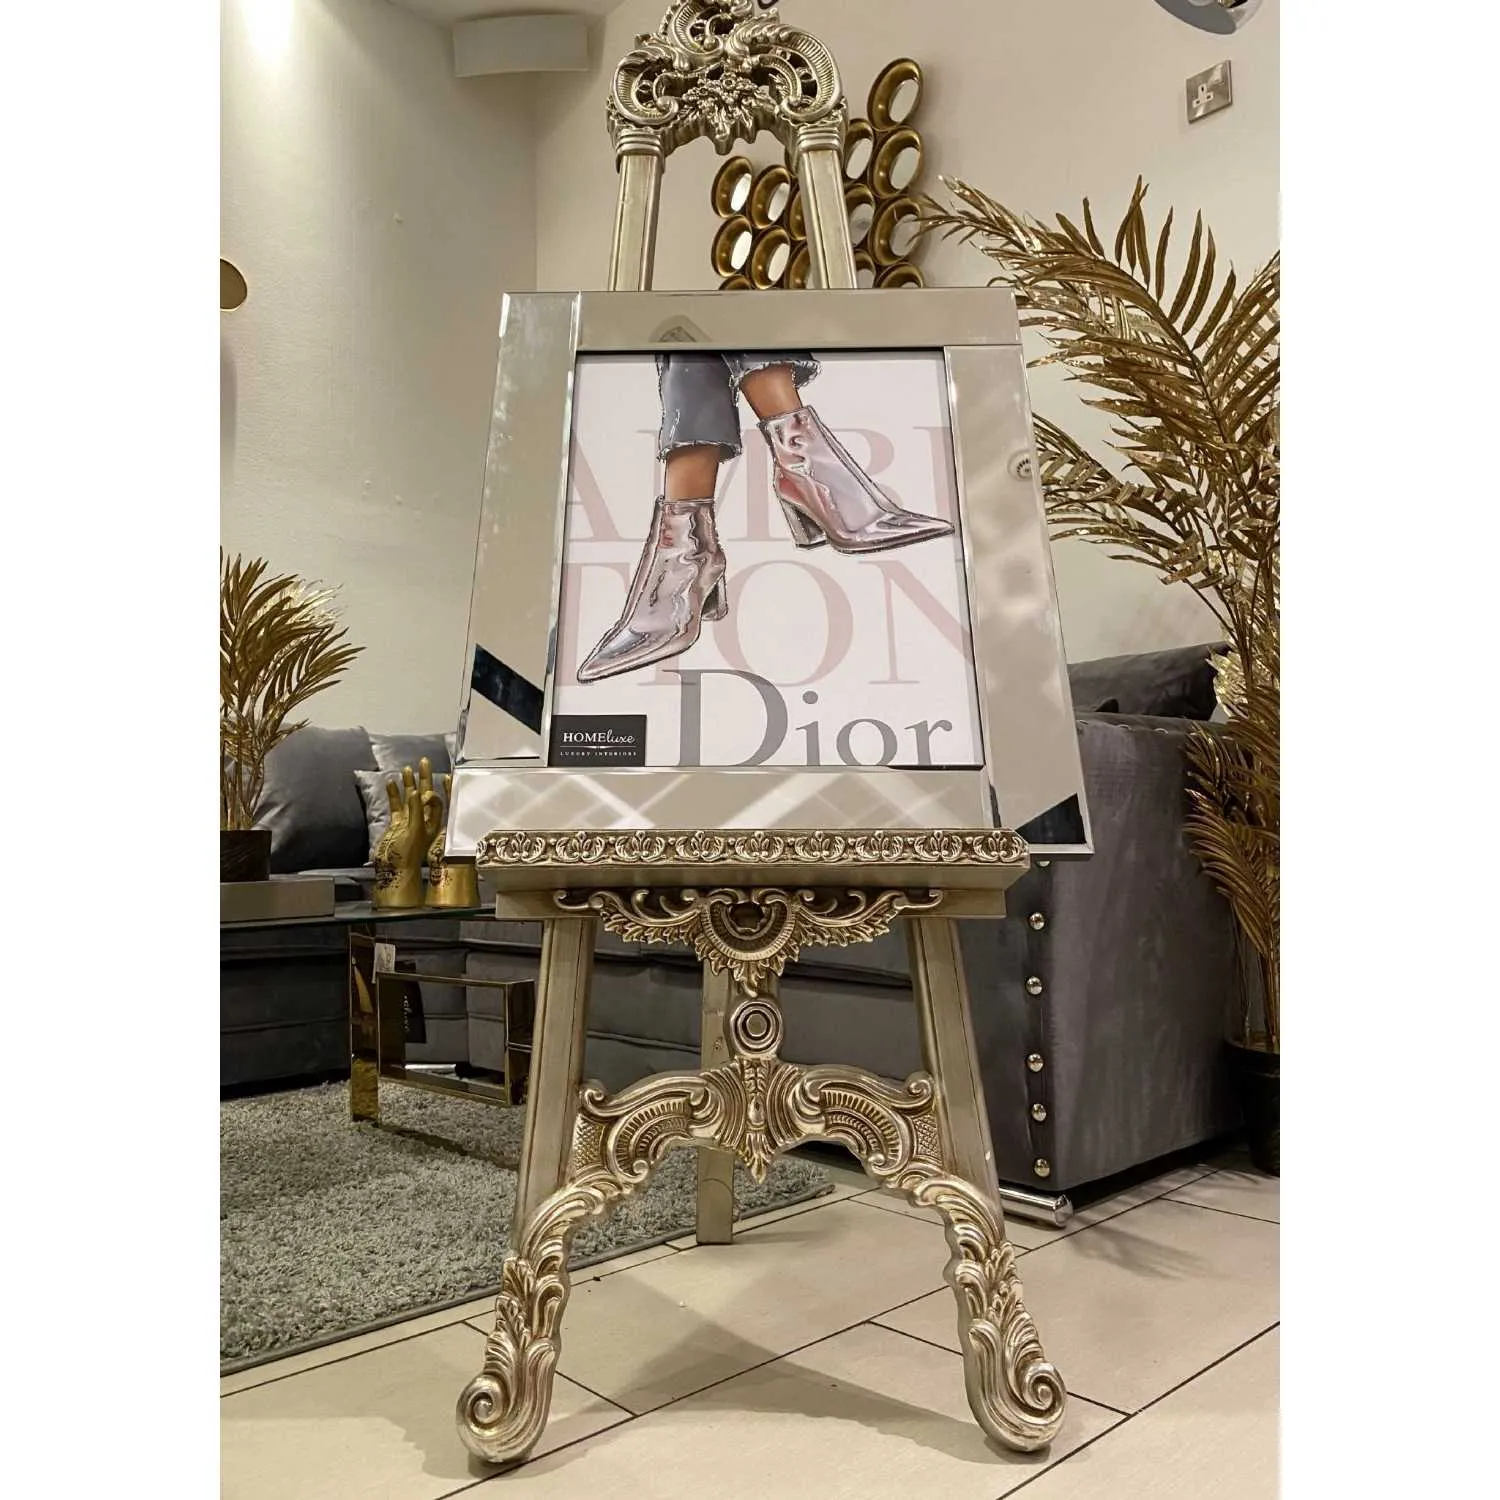 Dior Fashion Shoes Wall Art Mirror Frame